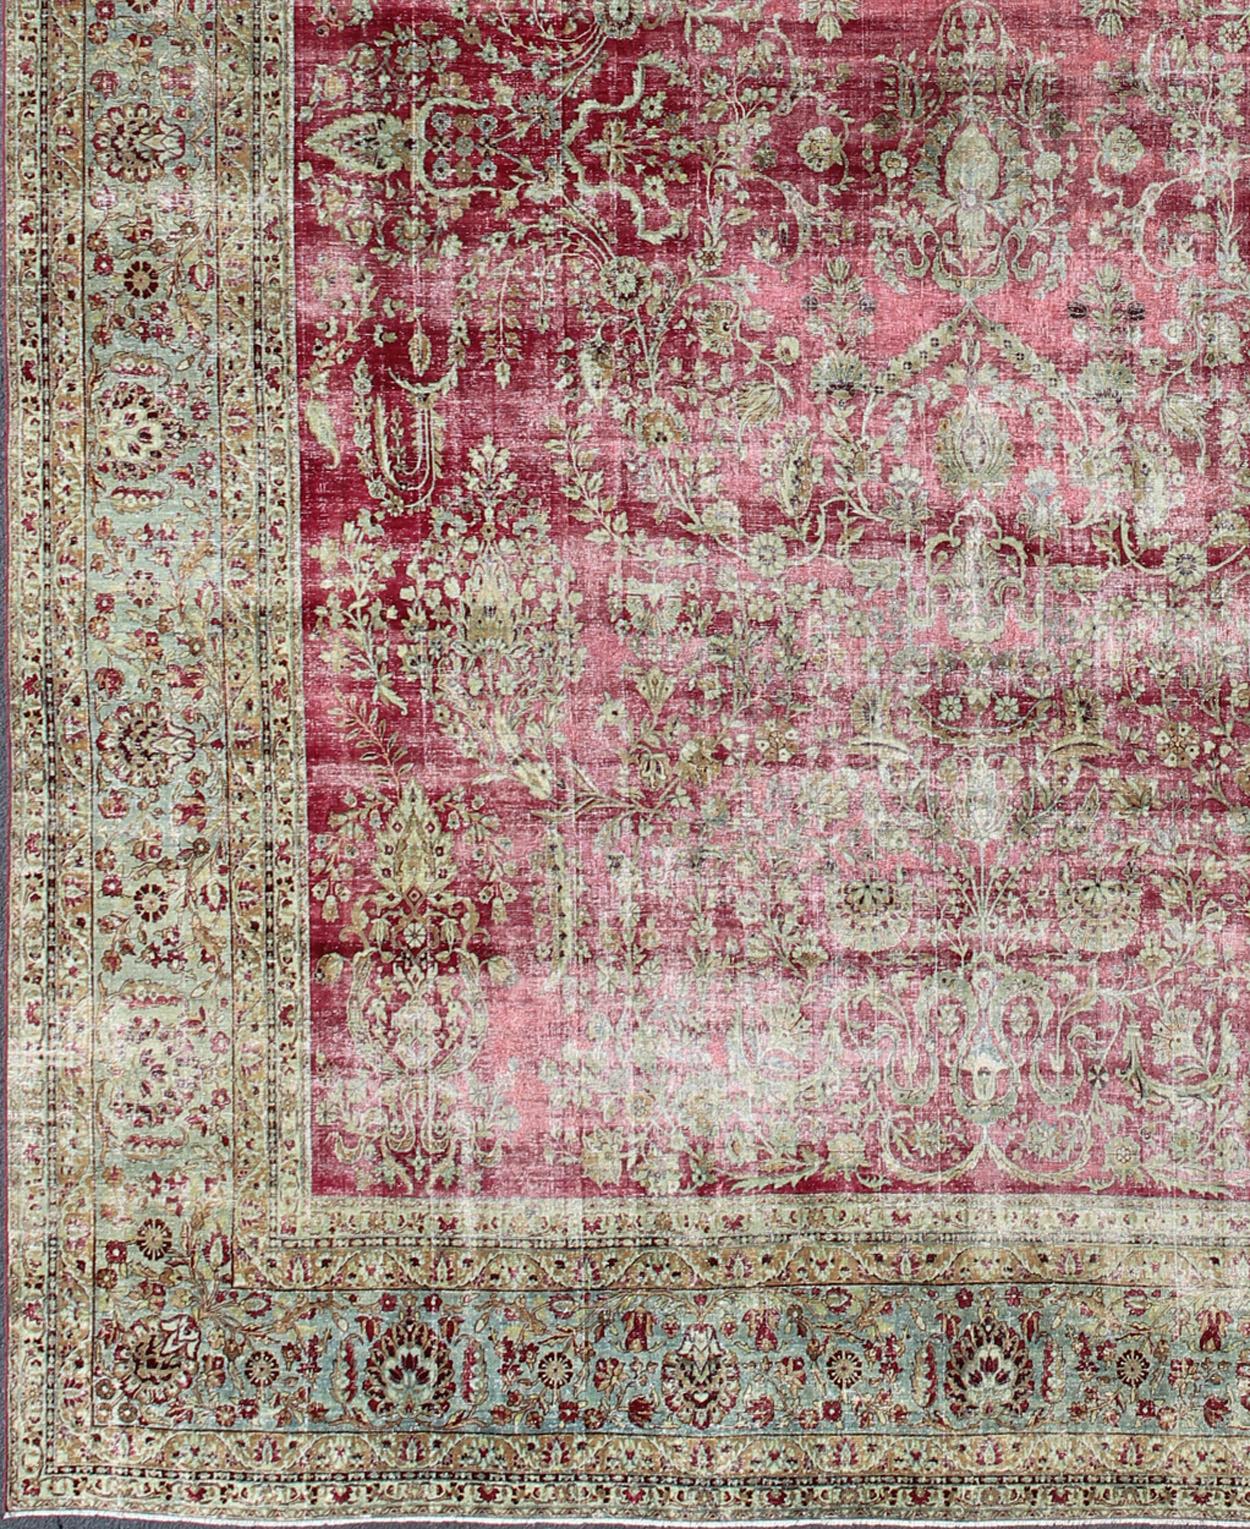 Dieser prächtige antike Kerman-Teppich aus dem Jahr 1910 ist eine atemberaubende Leistung persischer Handwerkskunst und Gestaltung. Es wurde in der südostpersischen Stadt Lavar fachmännisch gewebt und lässt sich in seinem traditionellen Design stark